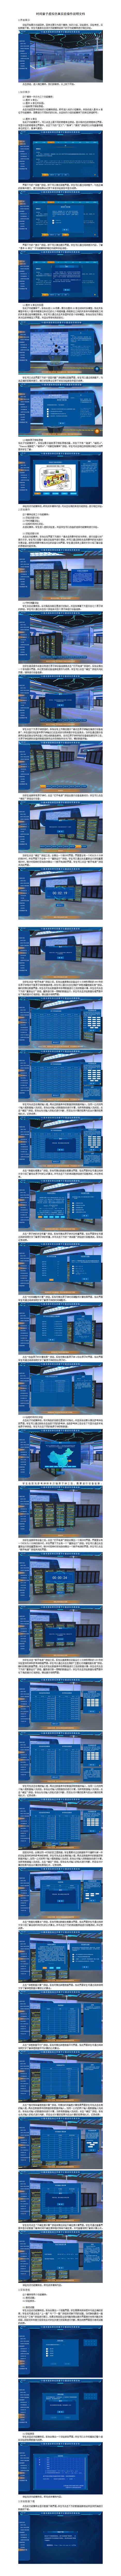 上海交大  时间量子项目操作文档(1).png